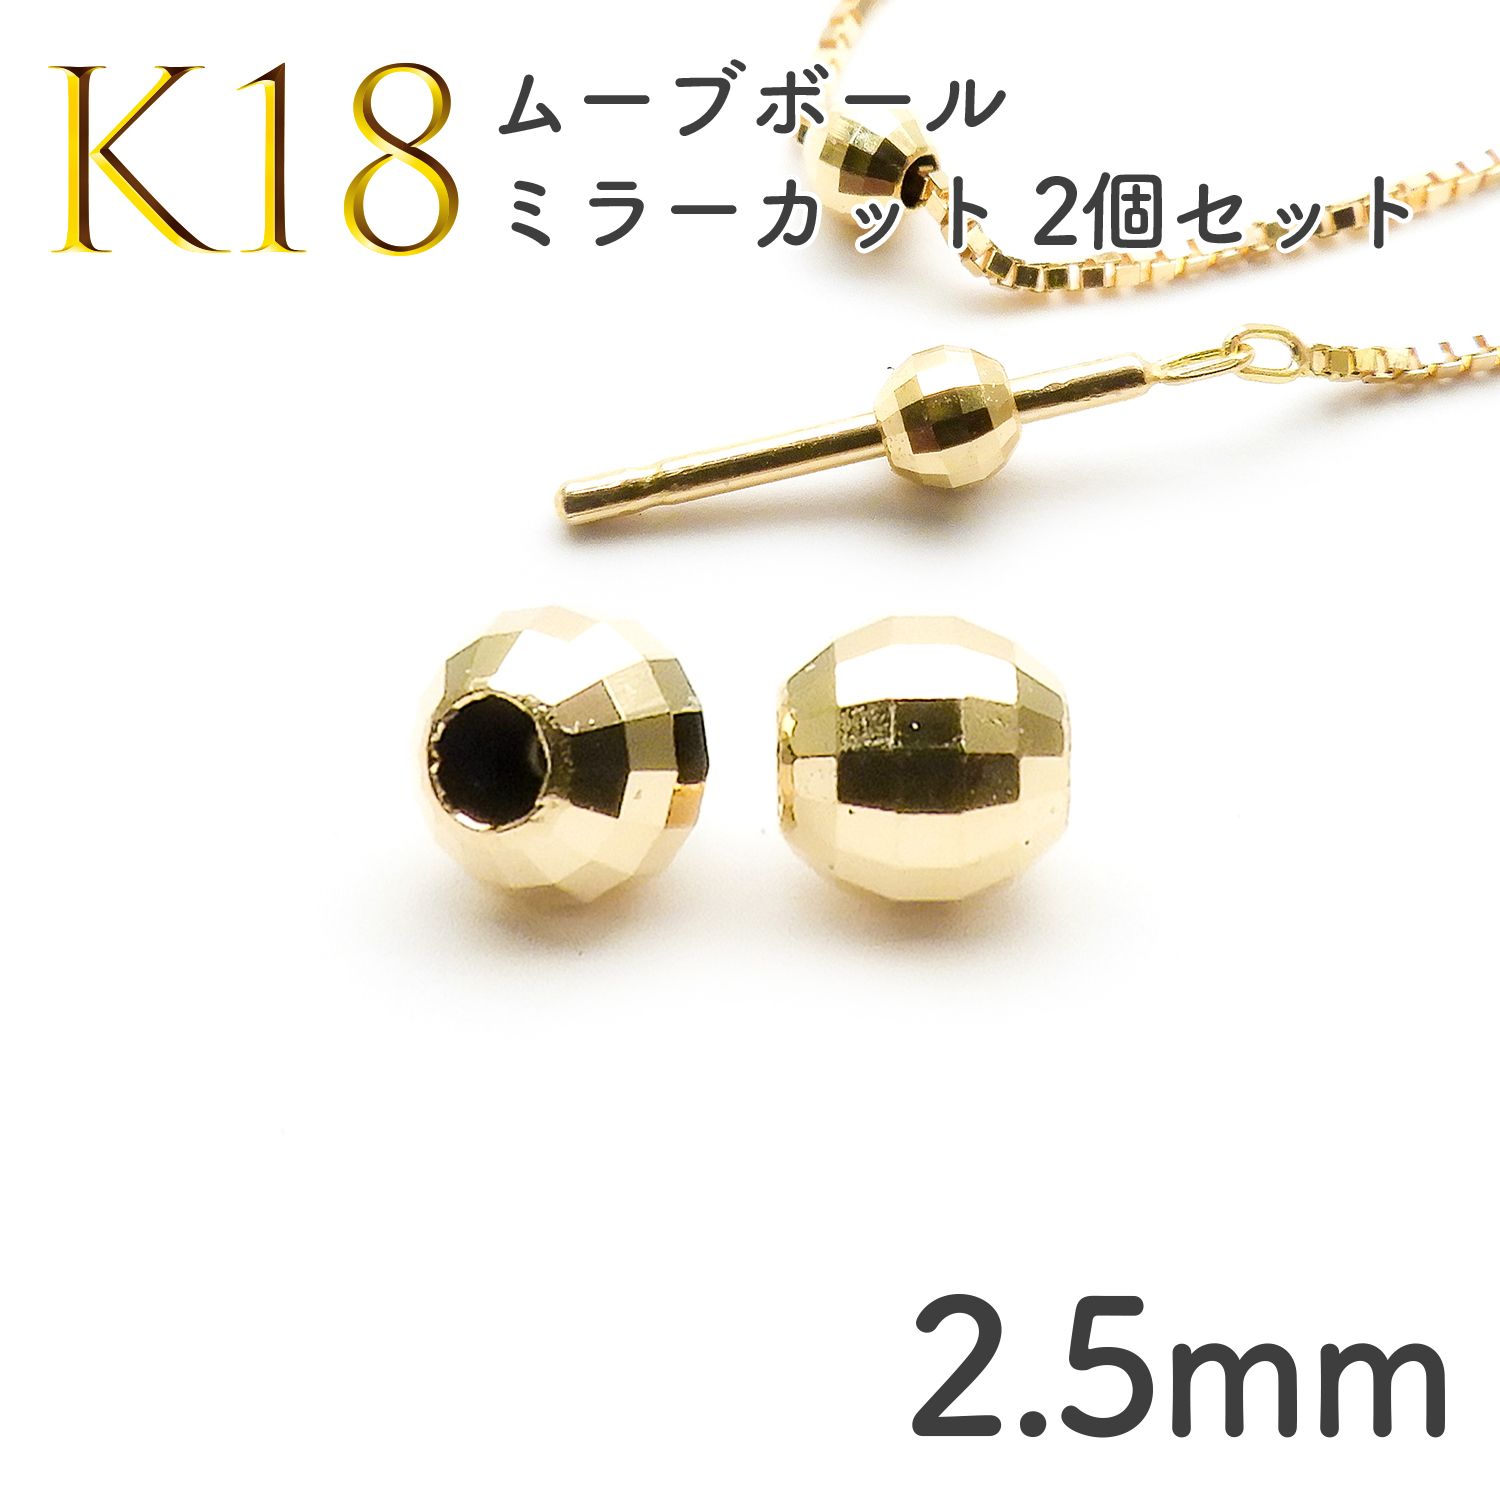 K18 シリコン入りムーブボール ミラーカット 2個セット[093]2.5mm 